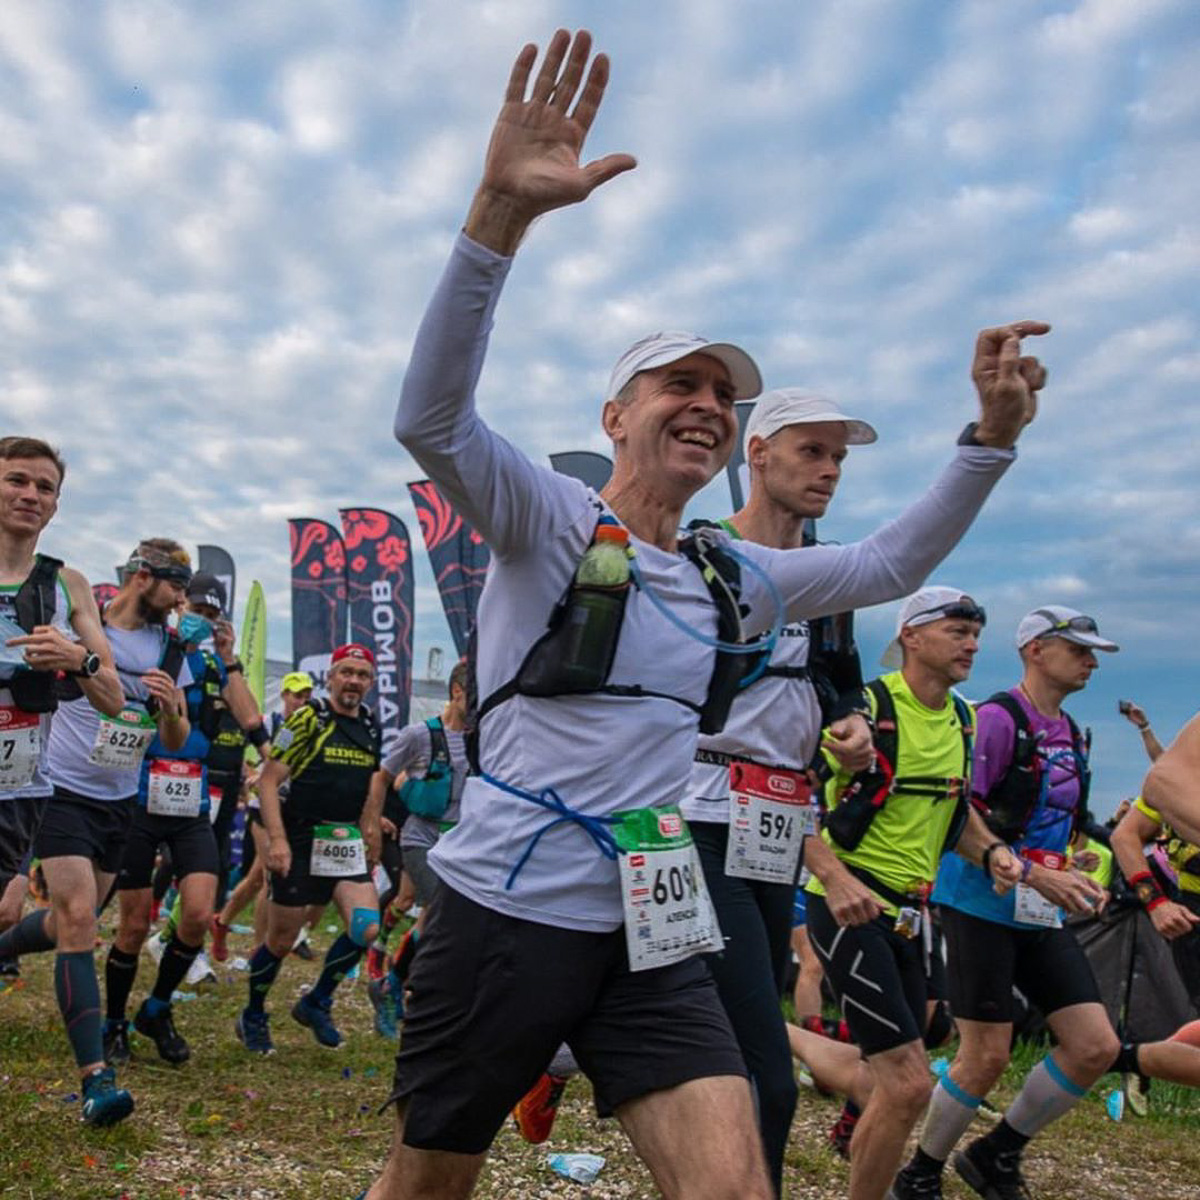 В минувшие выходные в Суздале состоялись масштабные соревнования по бегу - Golden Ring Ultra Trail 2020. Участники поделились впечатлениями